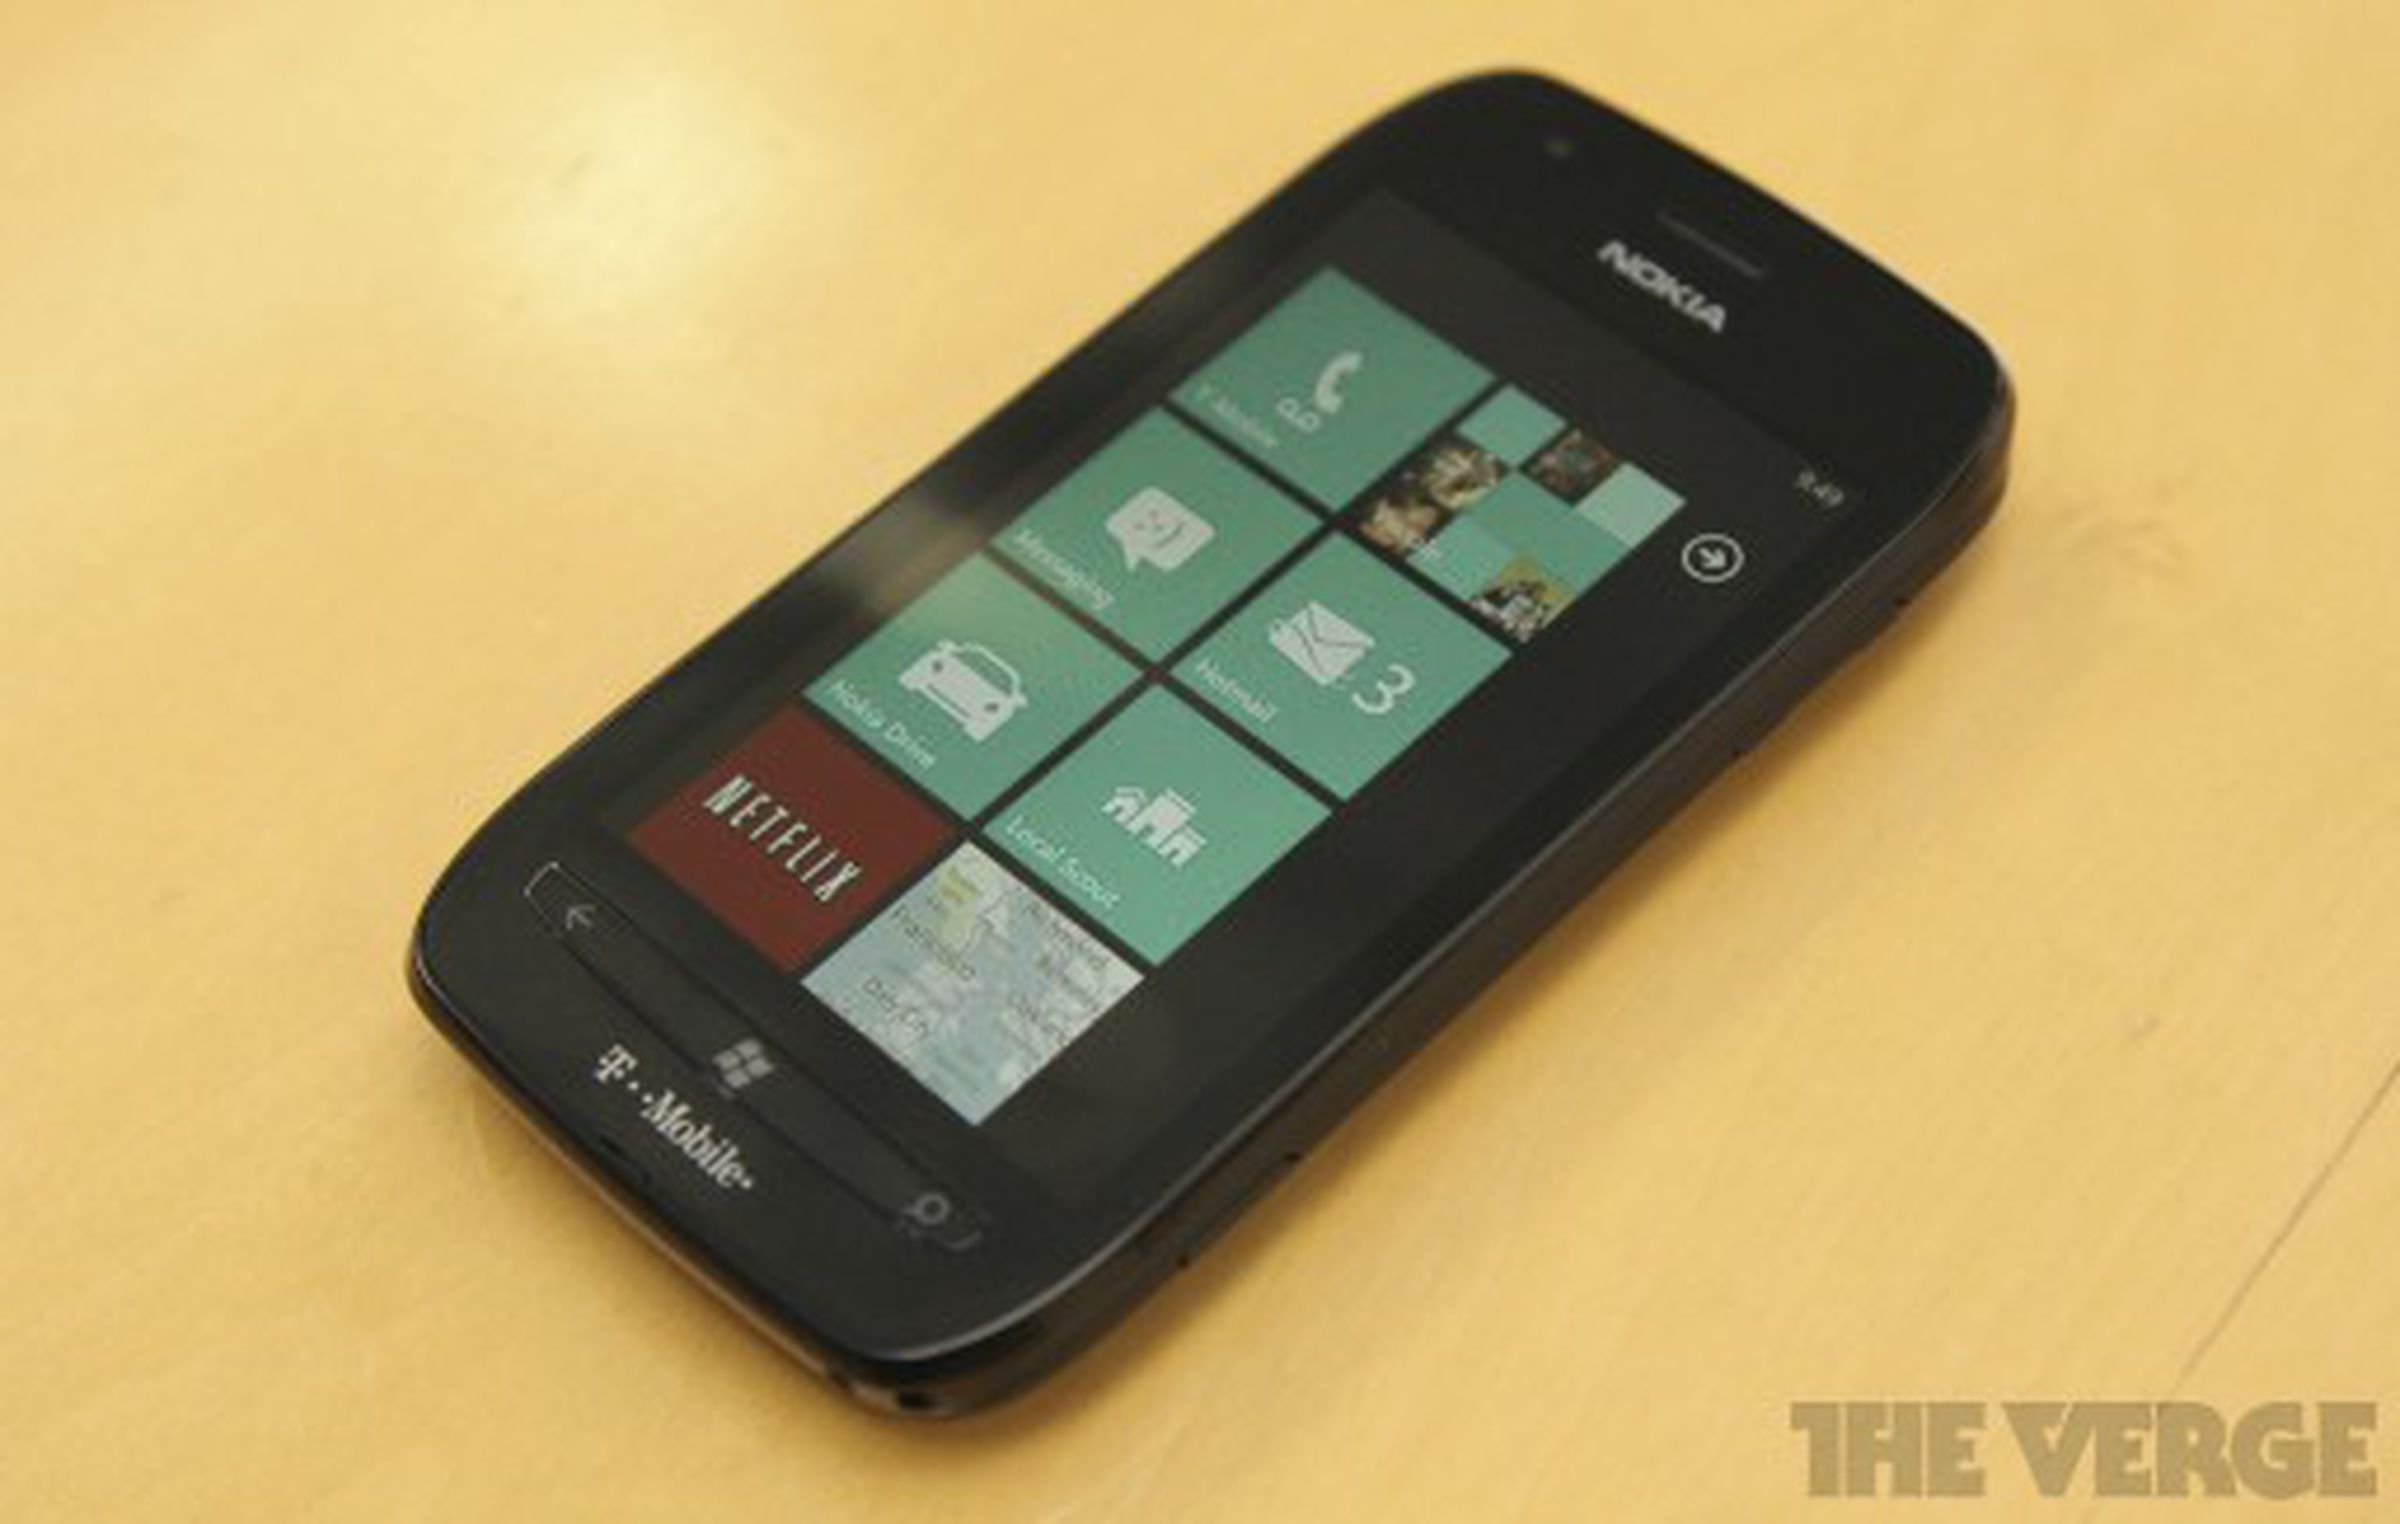 Nokia Lumia 710 for T-Mobile photos